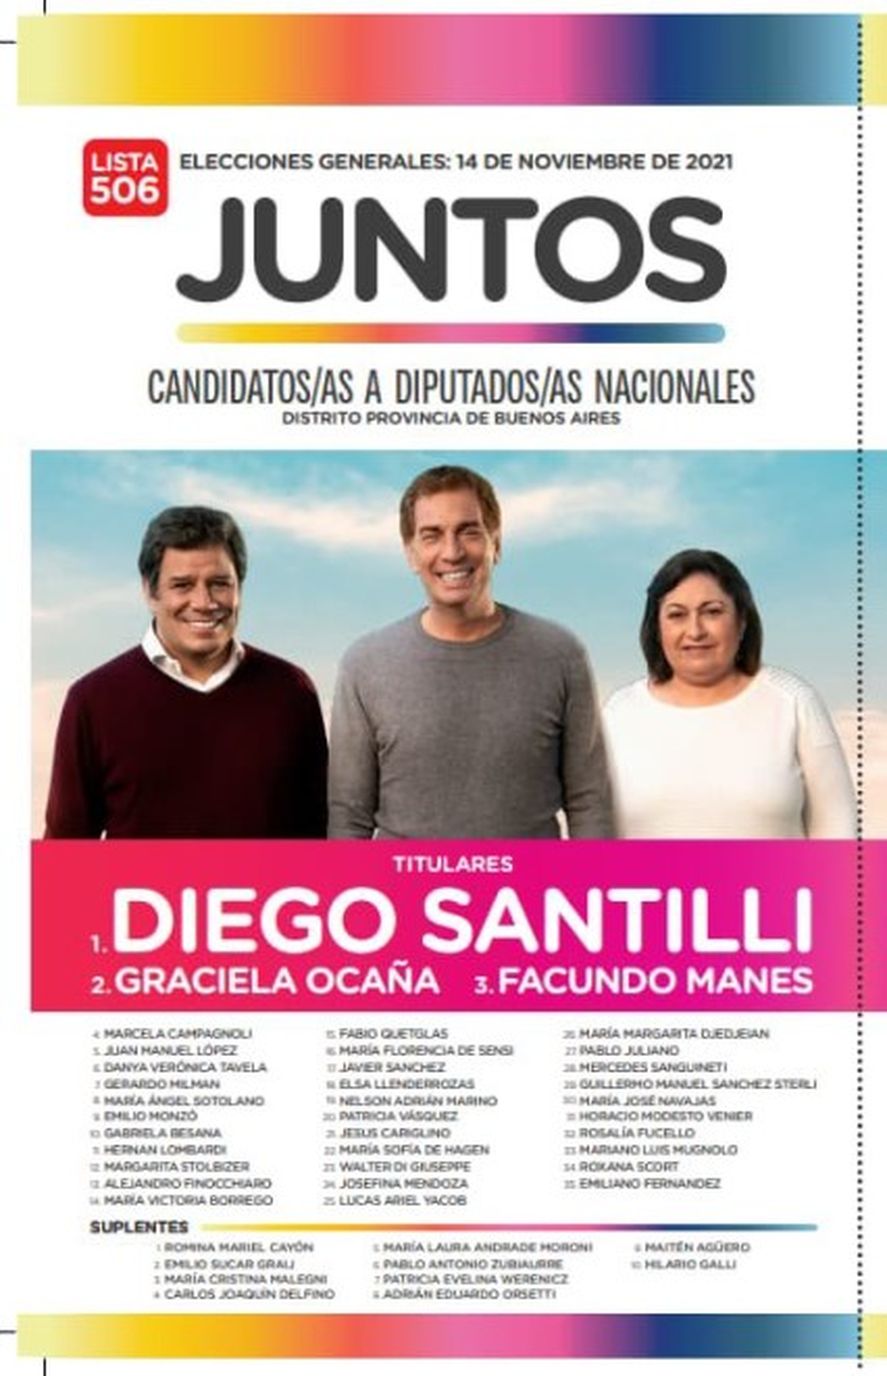 La lista de candidatos de provincia de Buenos Aires por Juntos en las elecciones 2021